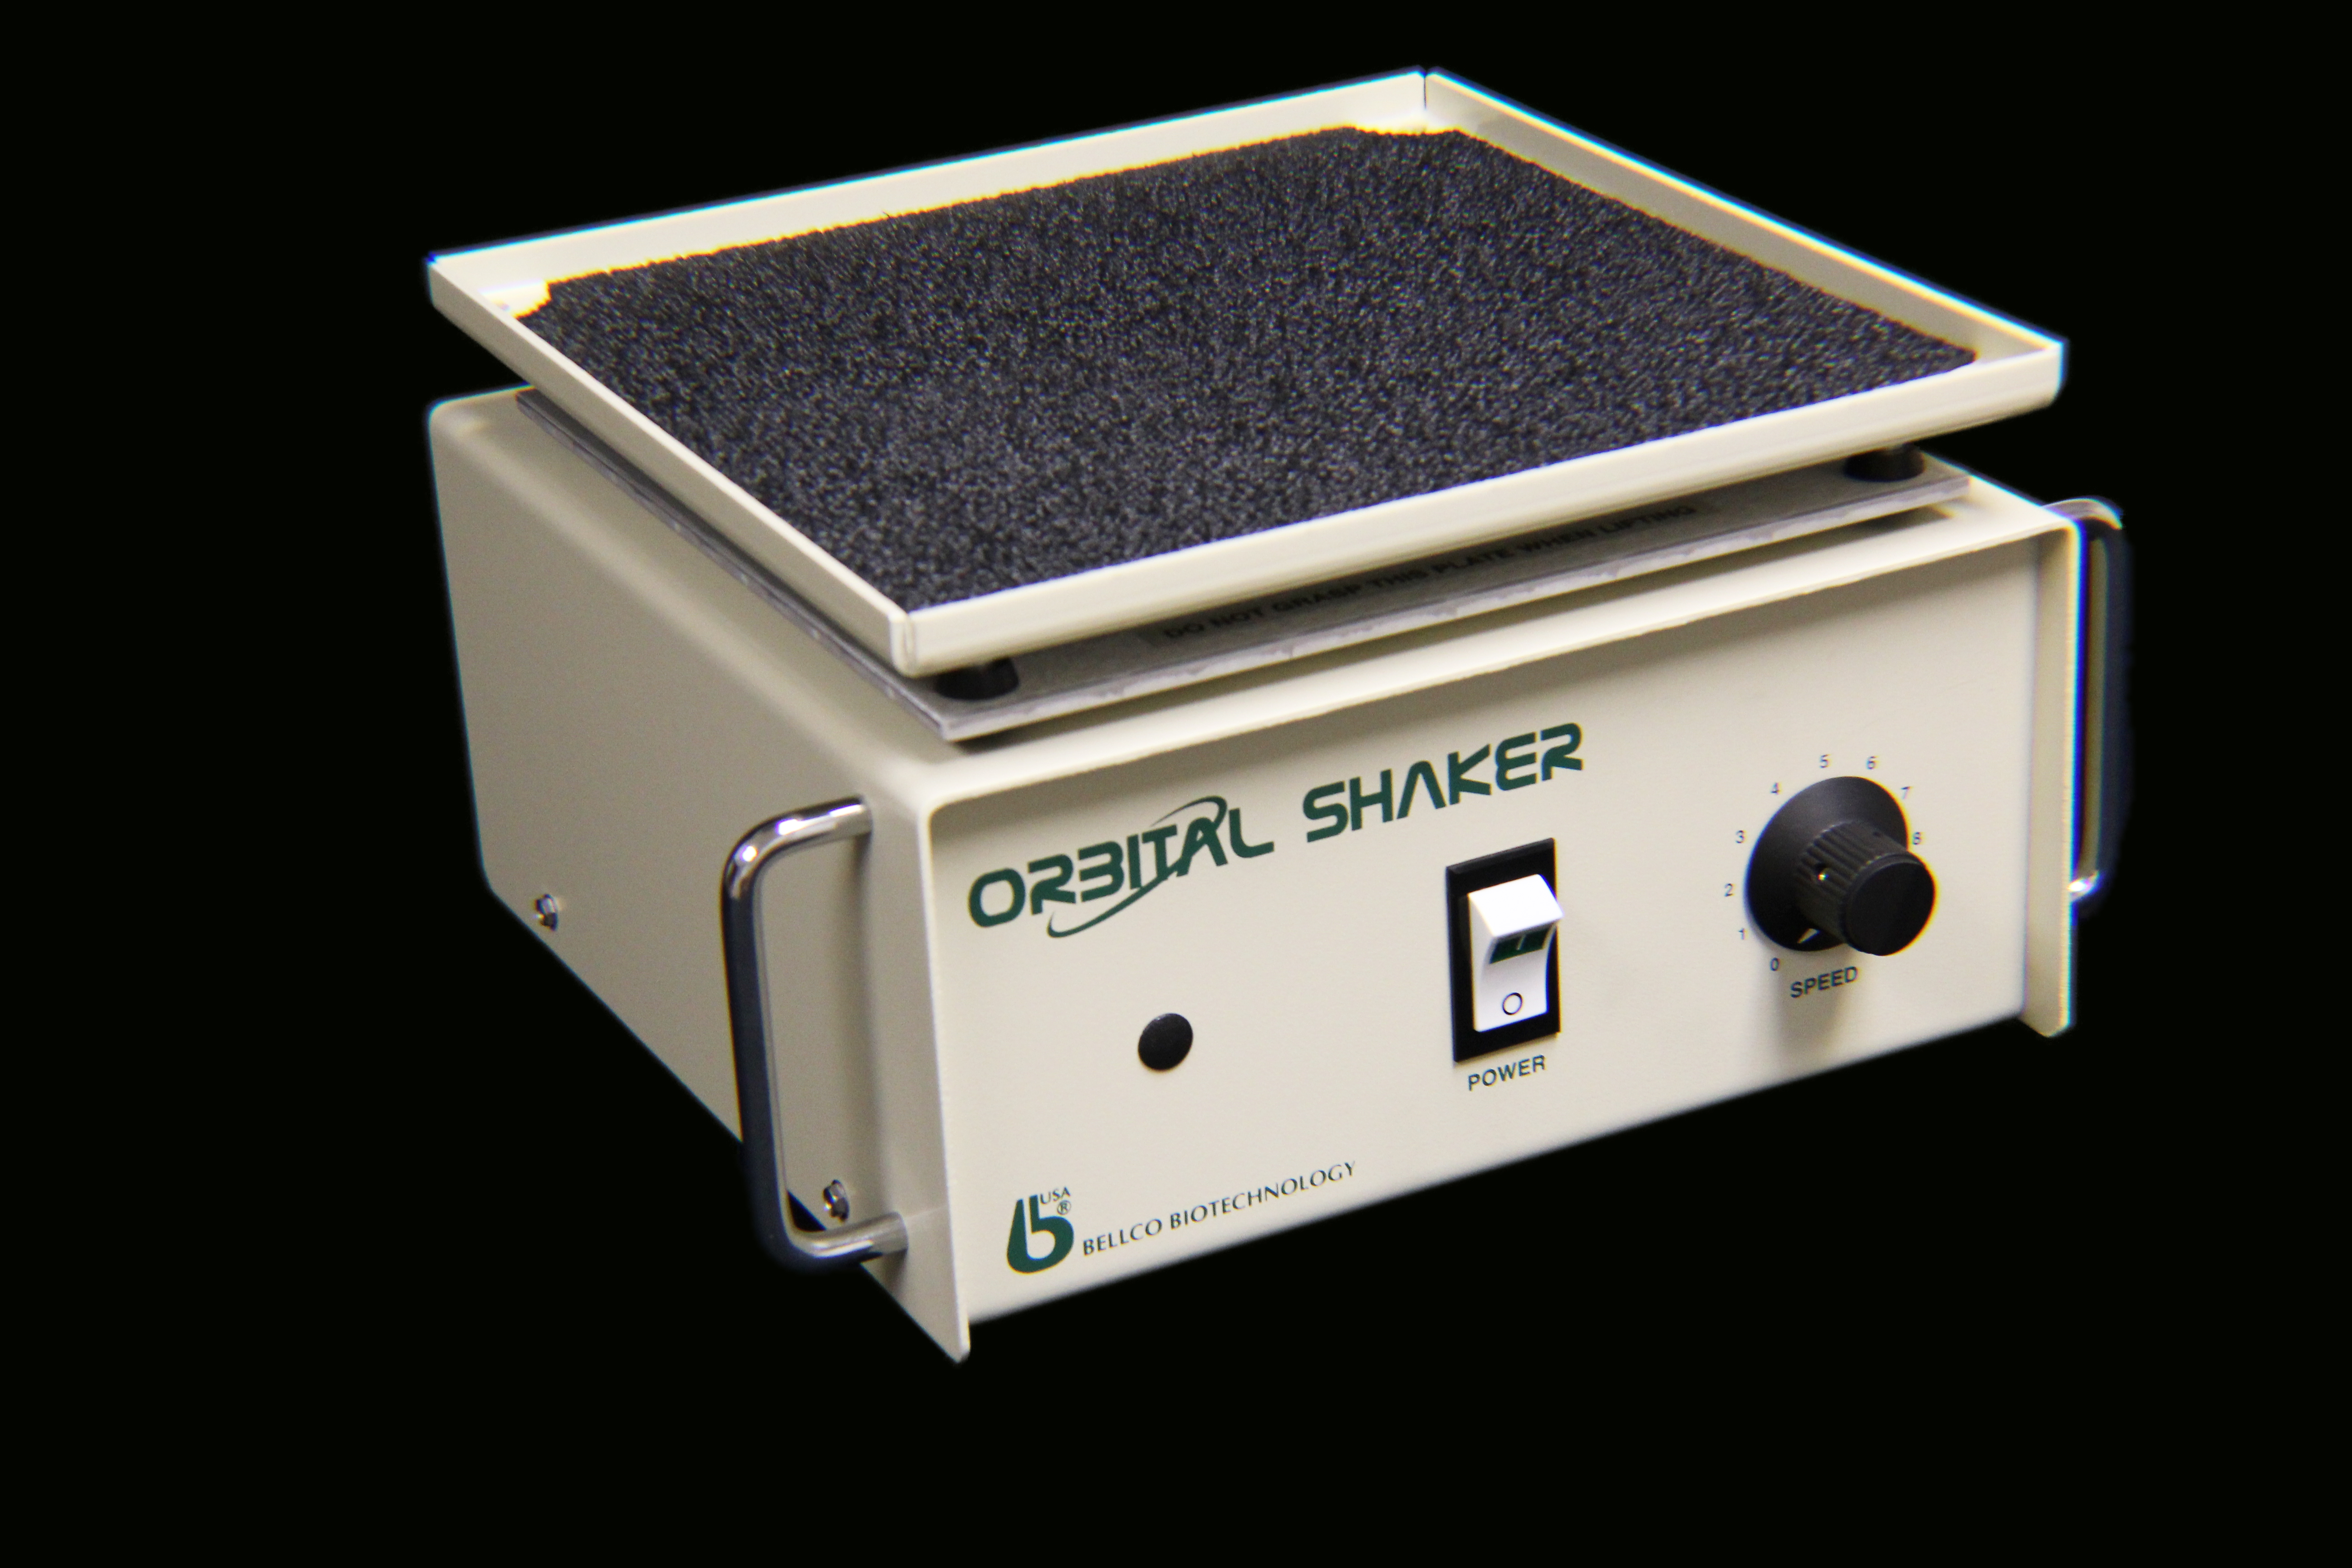 Large Rubber Mat for SKC-7000 Orbital Shaker